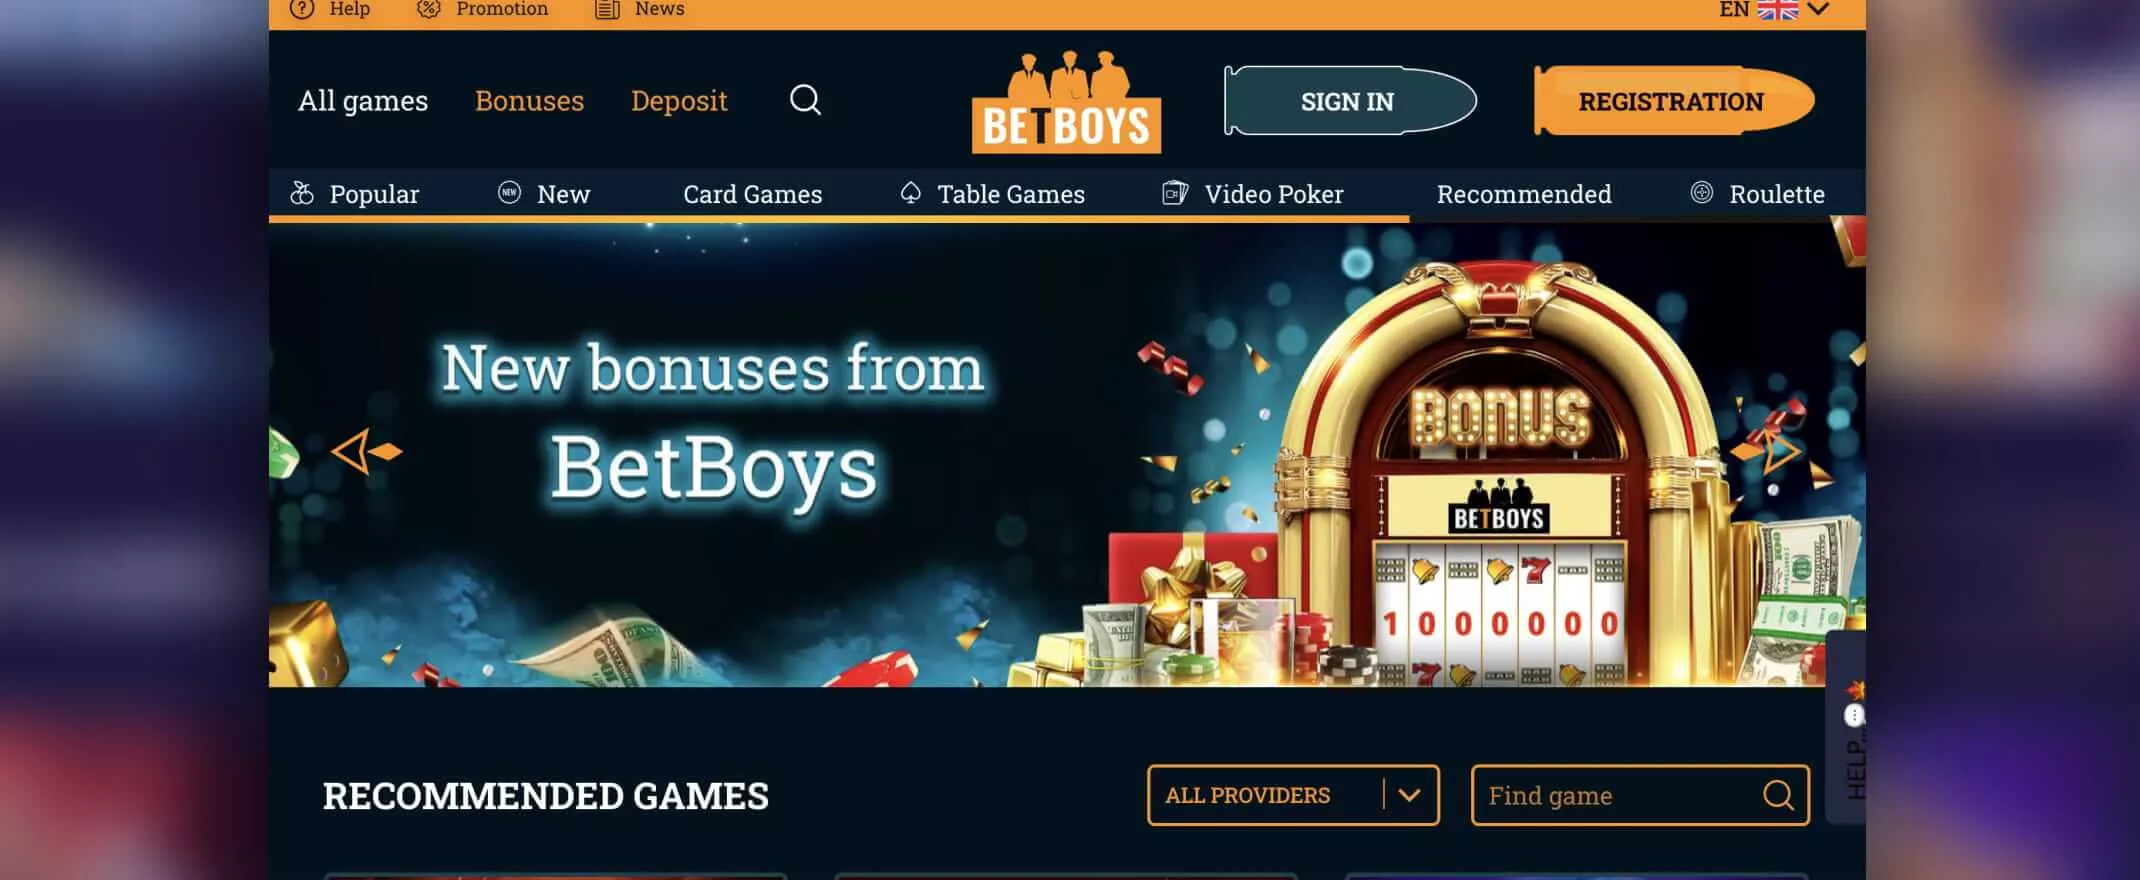 betboys casino homepage screenshot